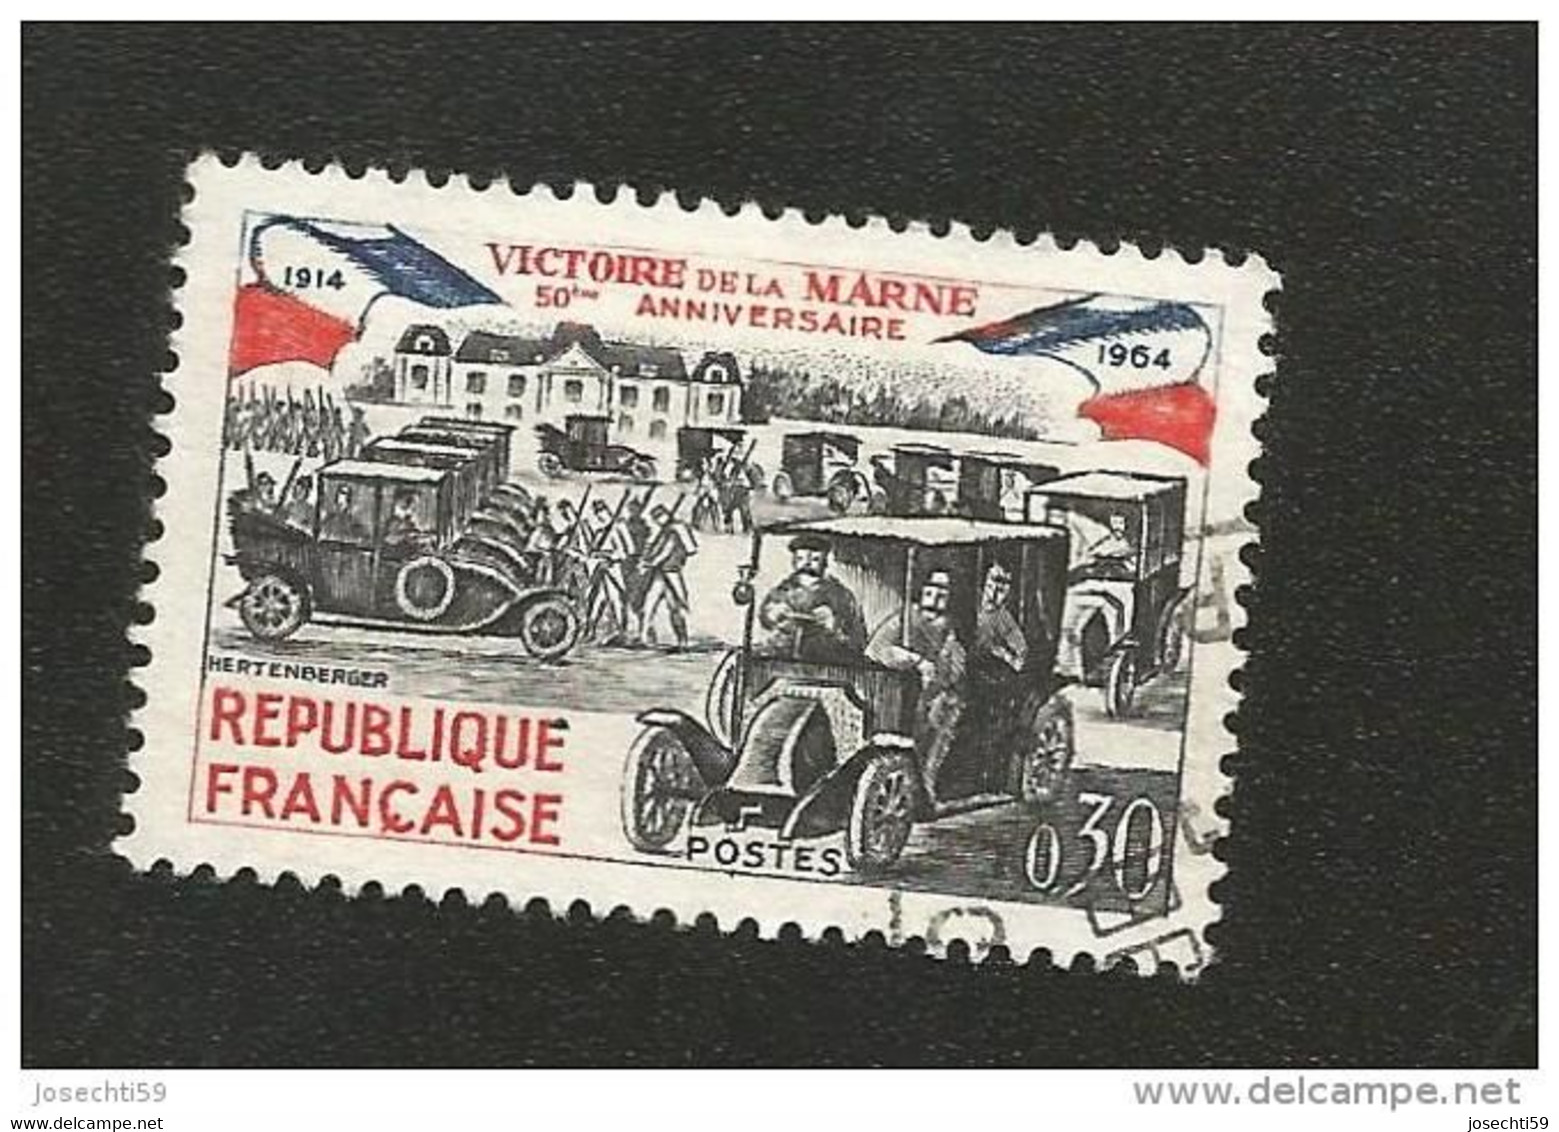 N° 1429 Victoire De La Marne 50ème Anniversaire Variété Encre Baveuse  Timbre  France Oblitéré 1964 - Usados